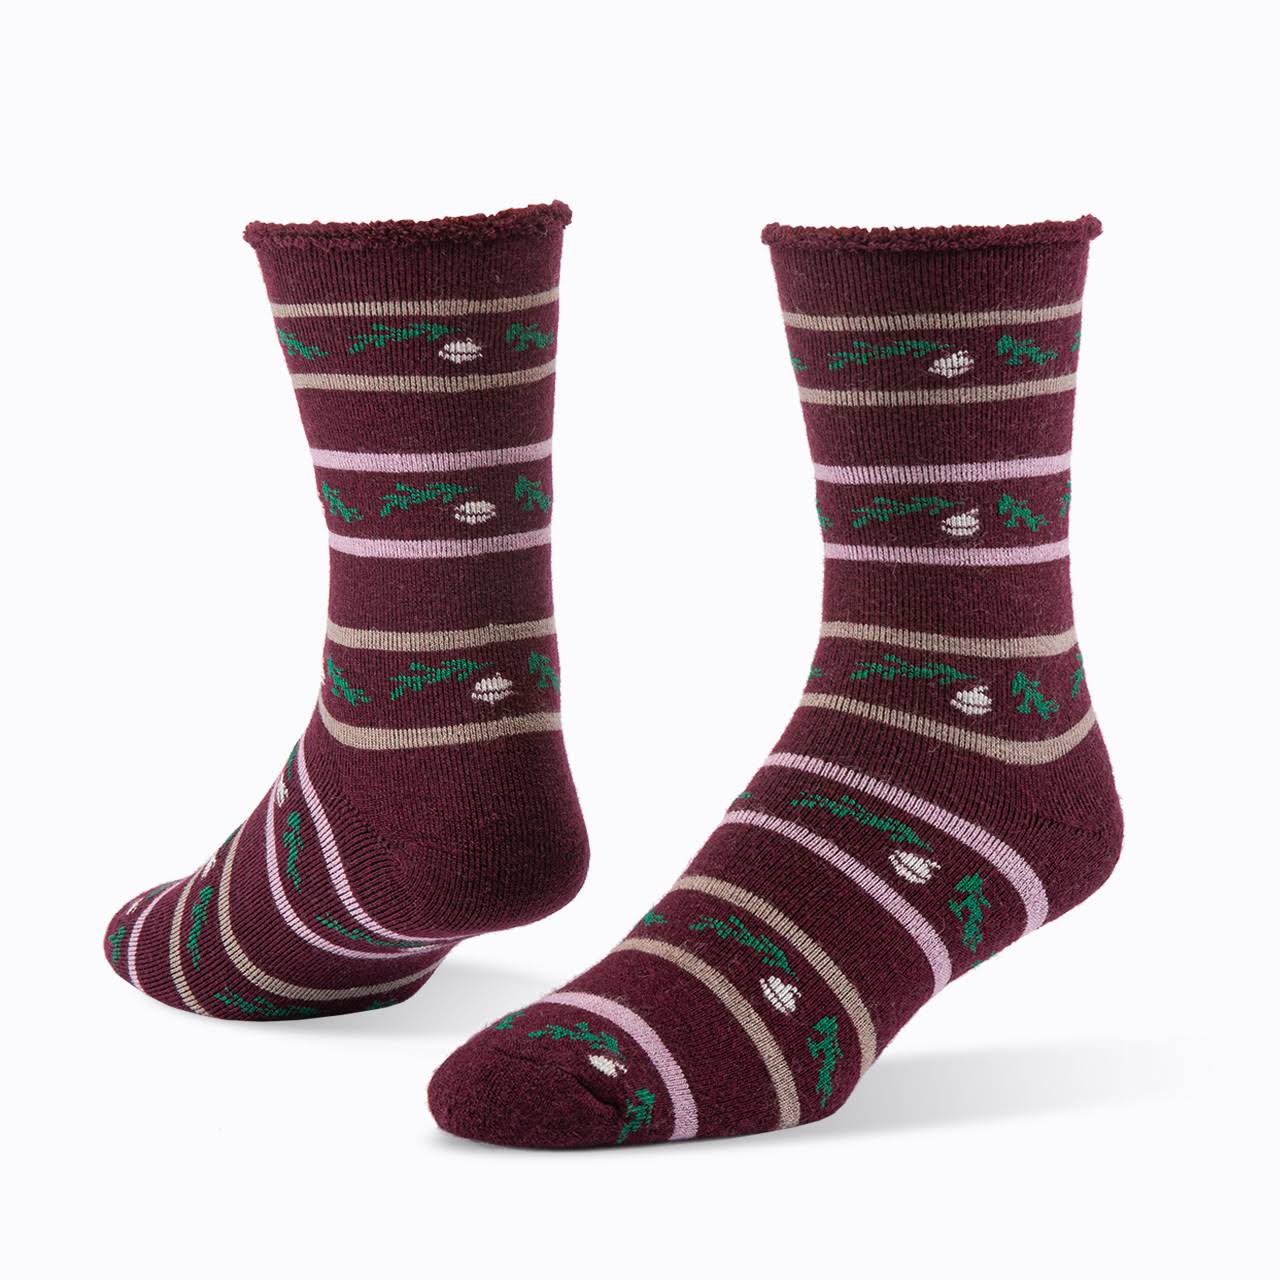 Organic Wool Socks - Snuggle Acorn Wine L